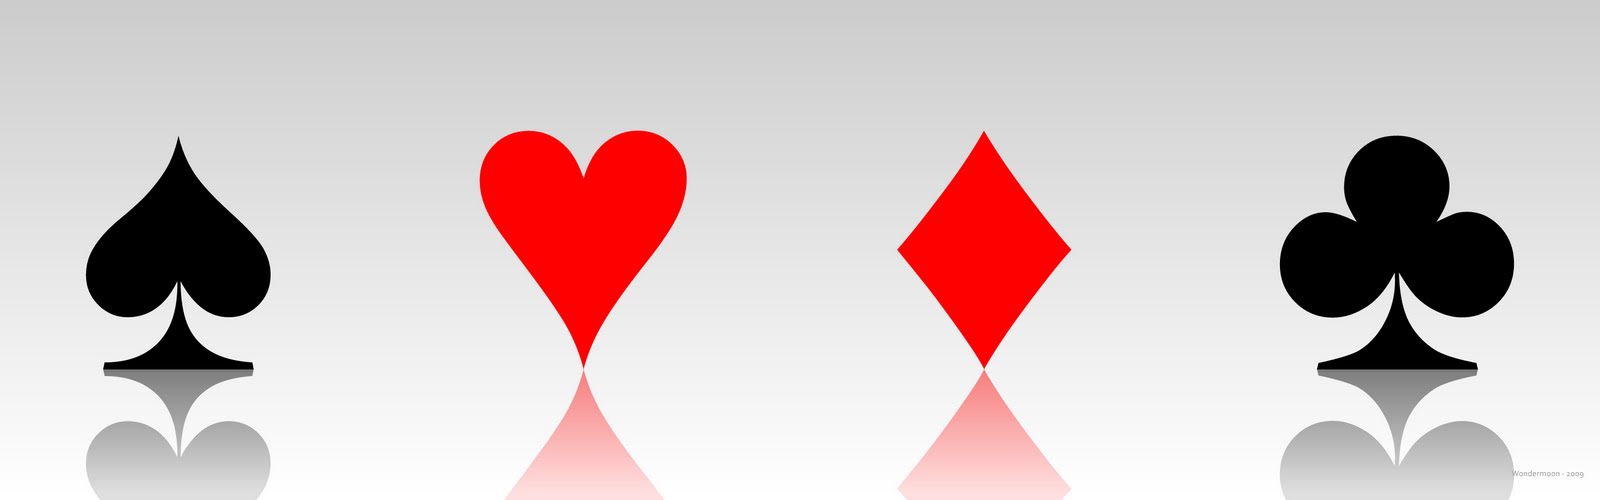 10 tipos de jogos de cartas